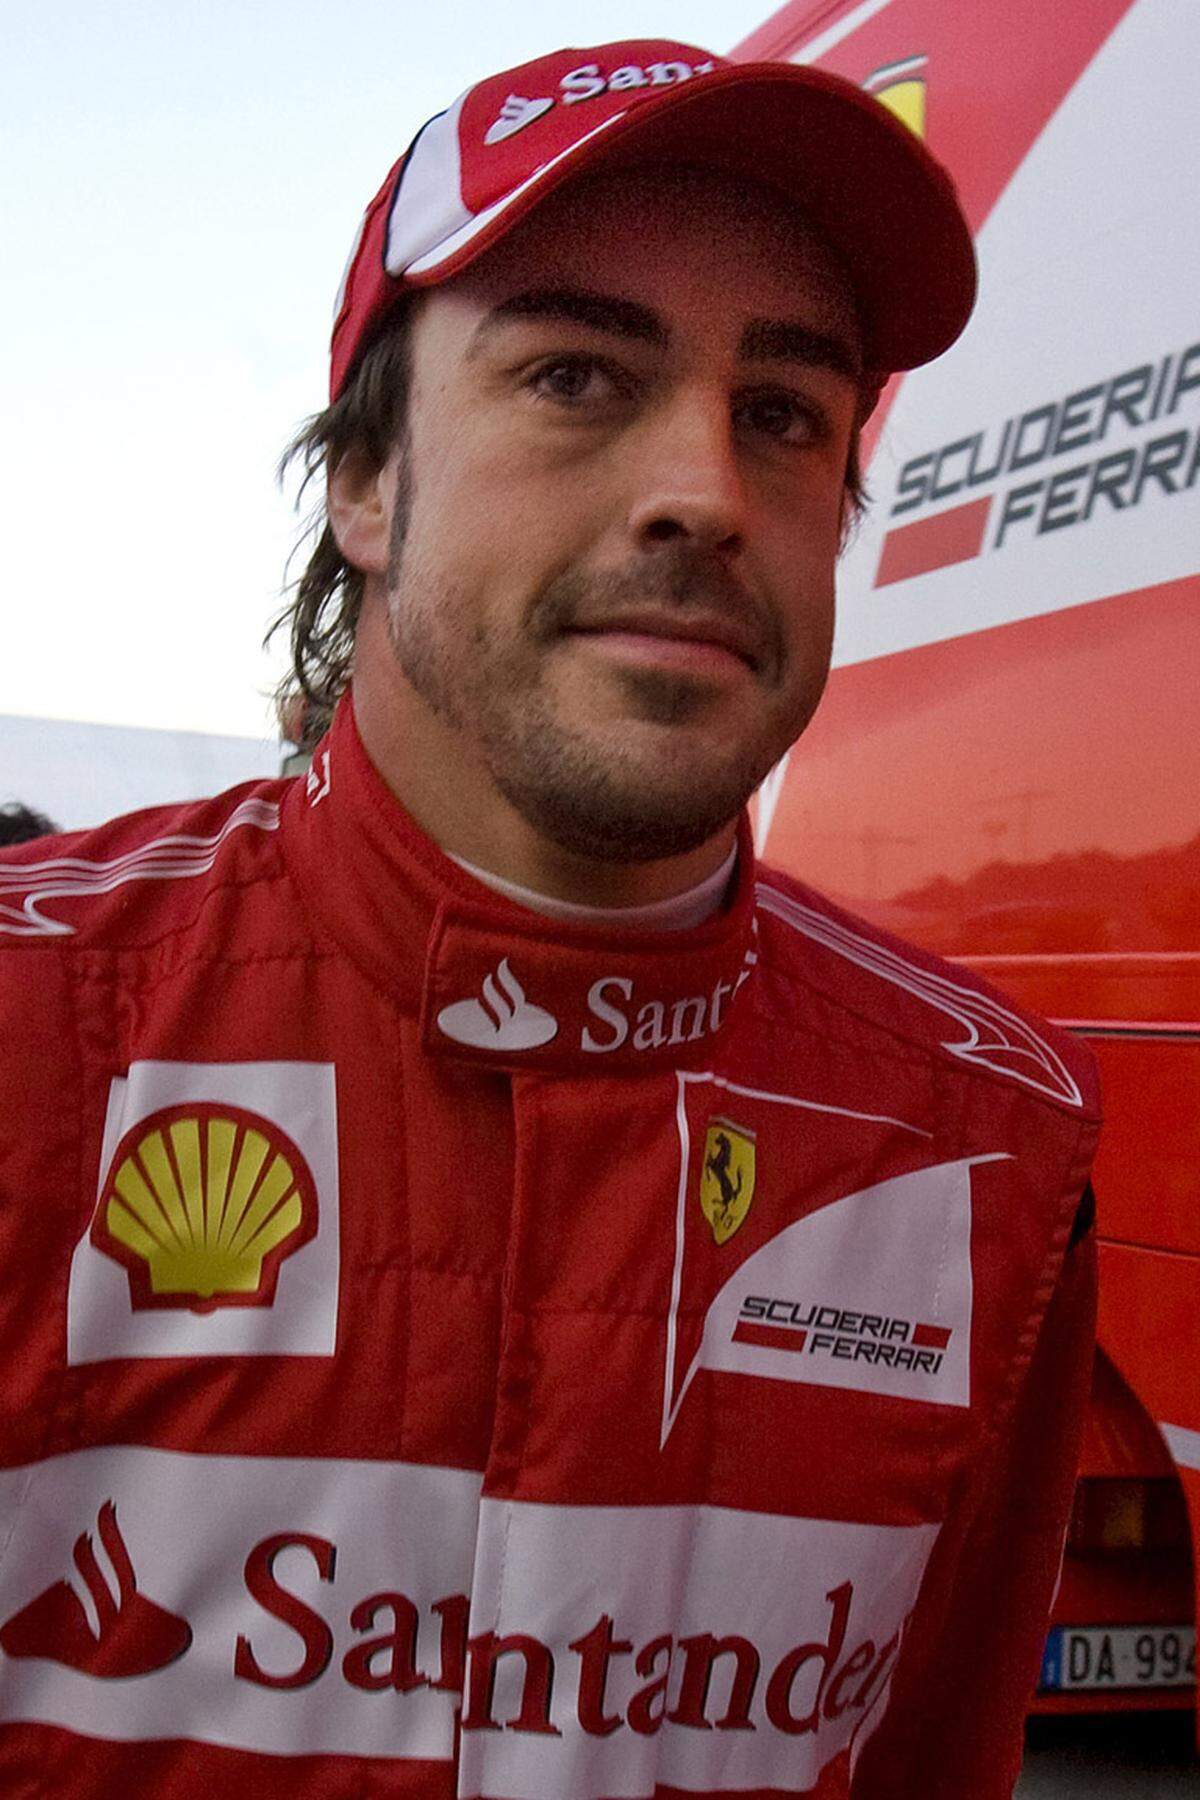 Fernando Alonso (ESP)  Geboren: 29. Juli 1981 in Oviedo  Erster Grand Prix: 4. März 2001 Australien  Erster GP-Sieg: 24. August 2003 Ungarn  GP-Starts: 159  GP-Siege: 26  Bisherige Teams: Minardi (2001), Renault (2002-2006), McLaren-Mercedes (2007), Renault (2008-2009)  Größte Erfolge: Weltmeister 2005 und 2006